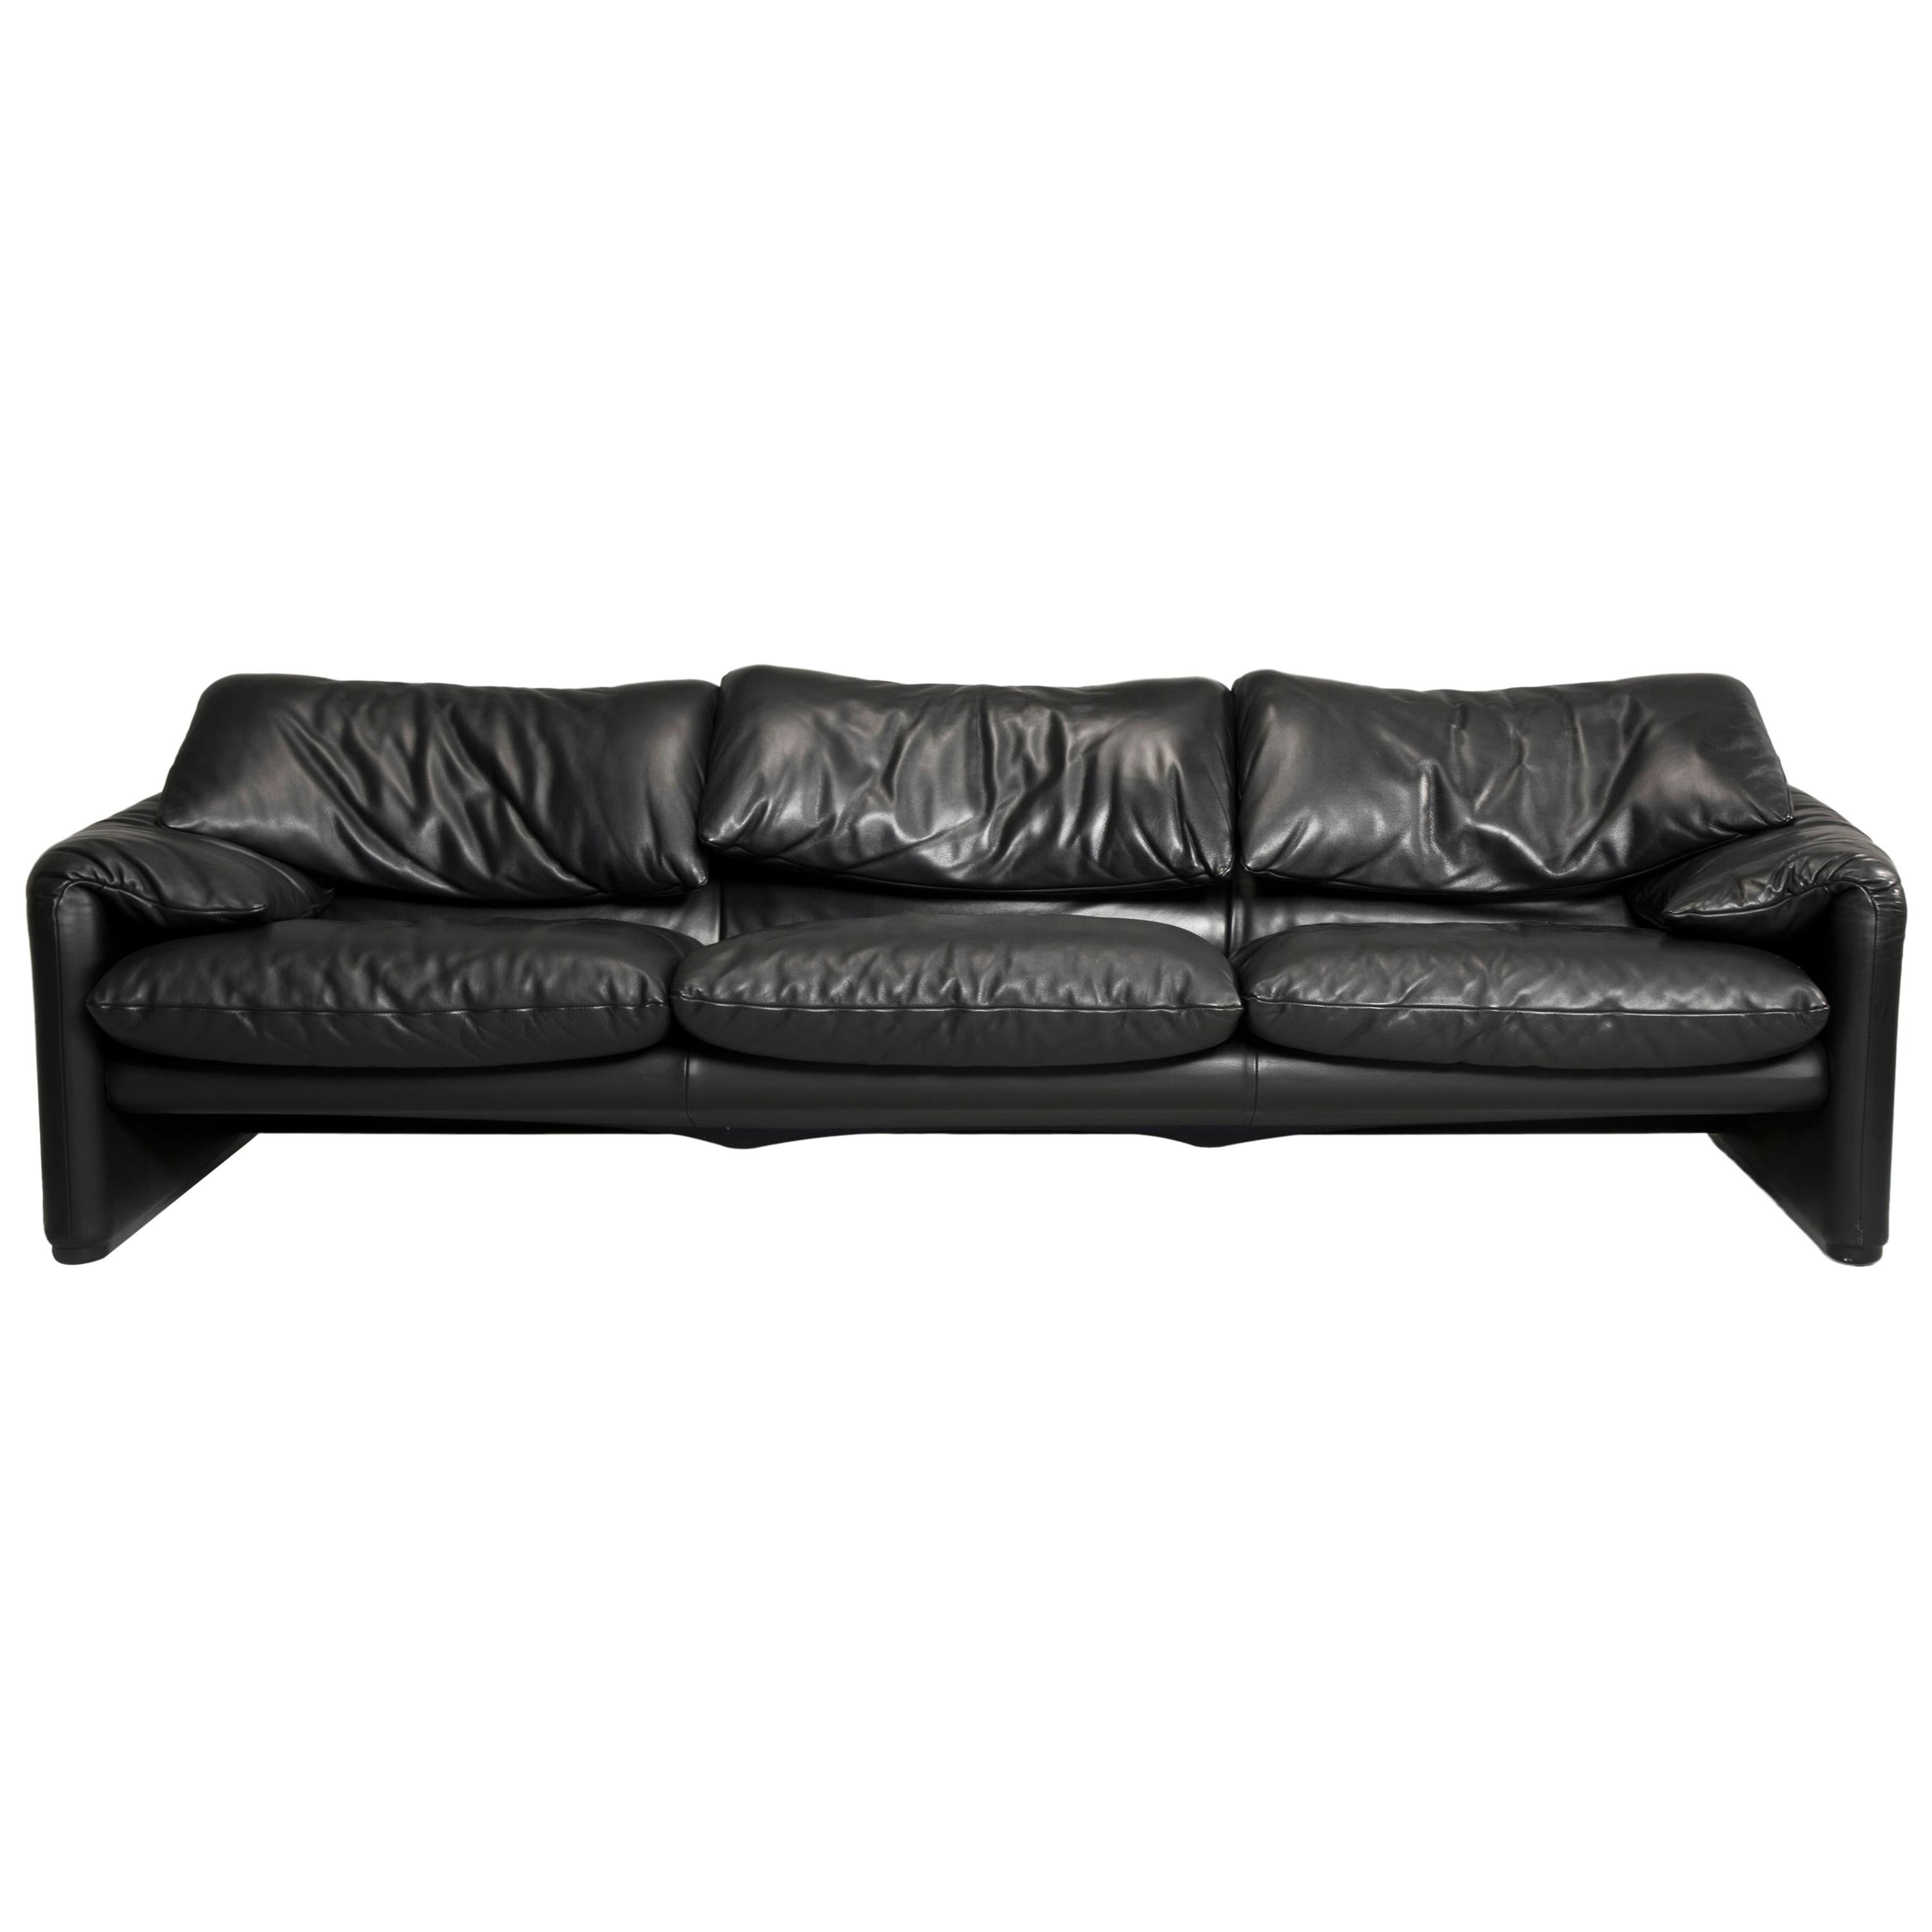 Magistretti for Cassina Black Leather Maralunga Three-Seat Sofa, 2000s